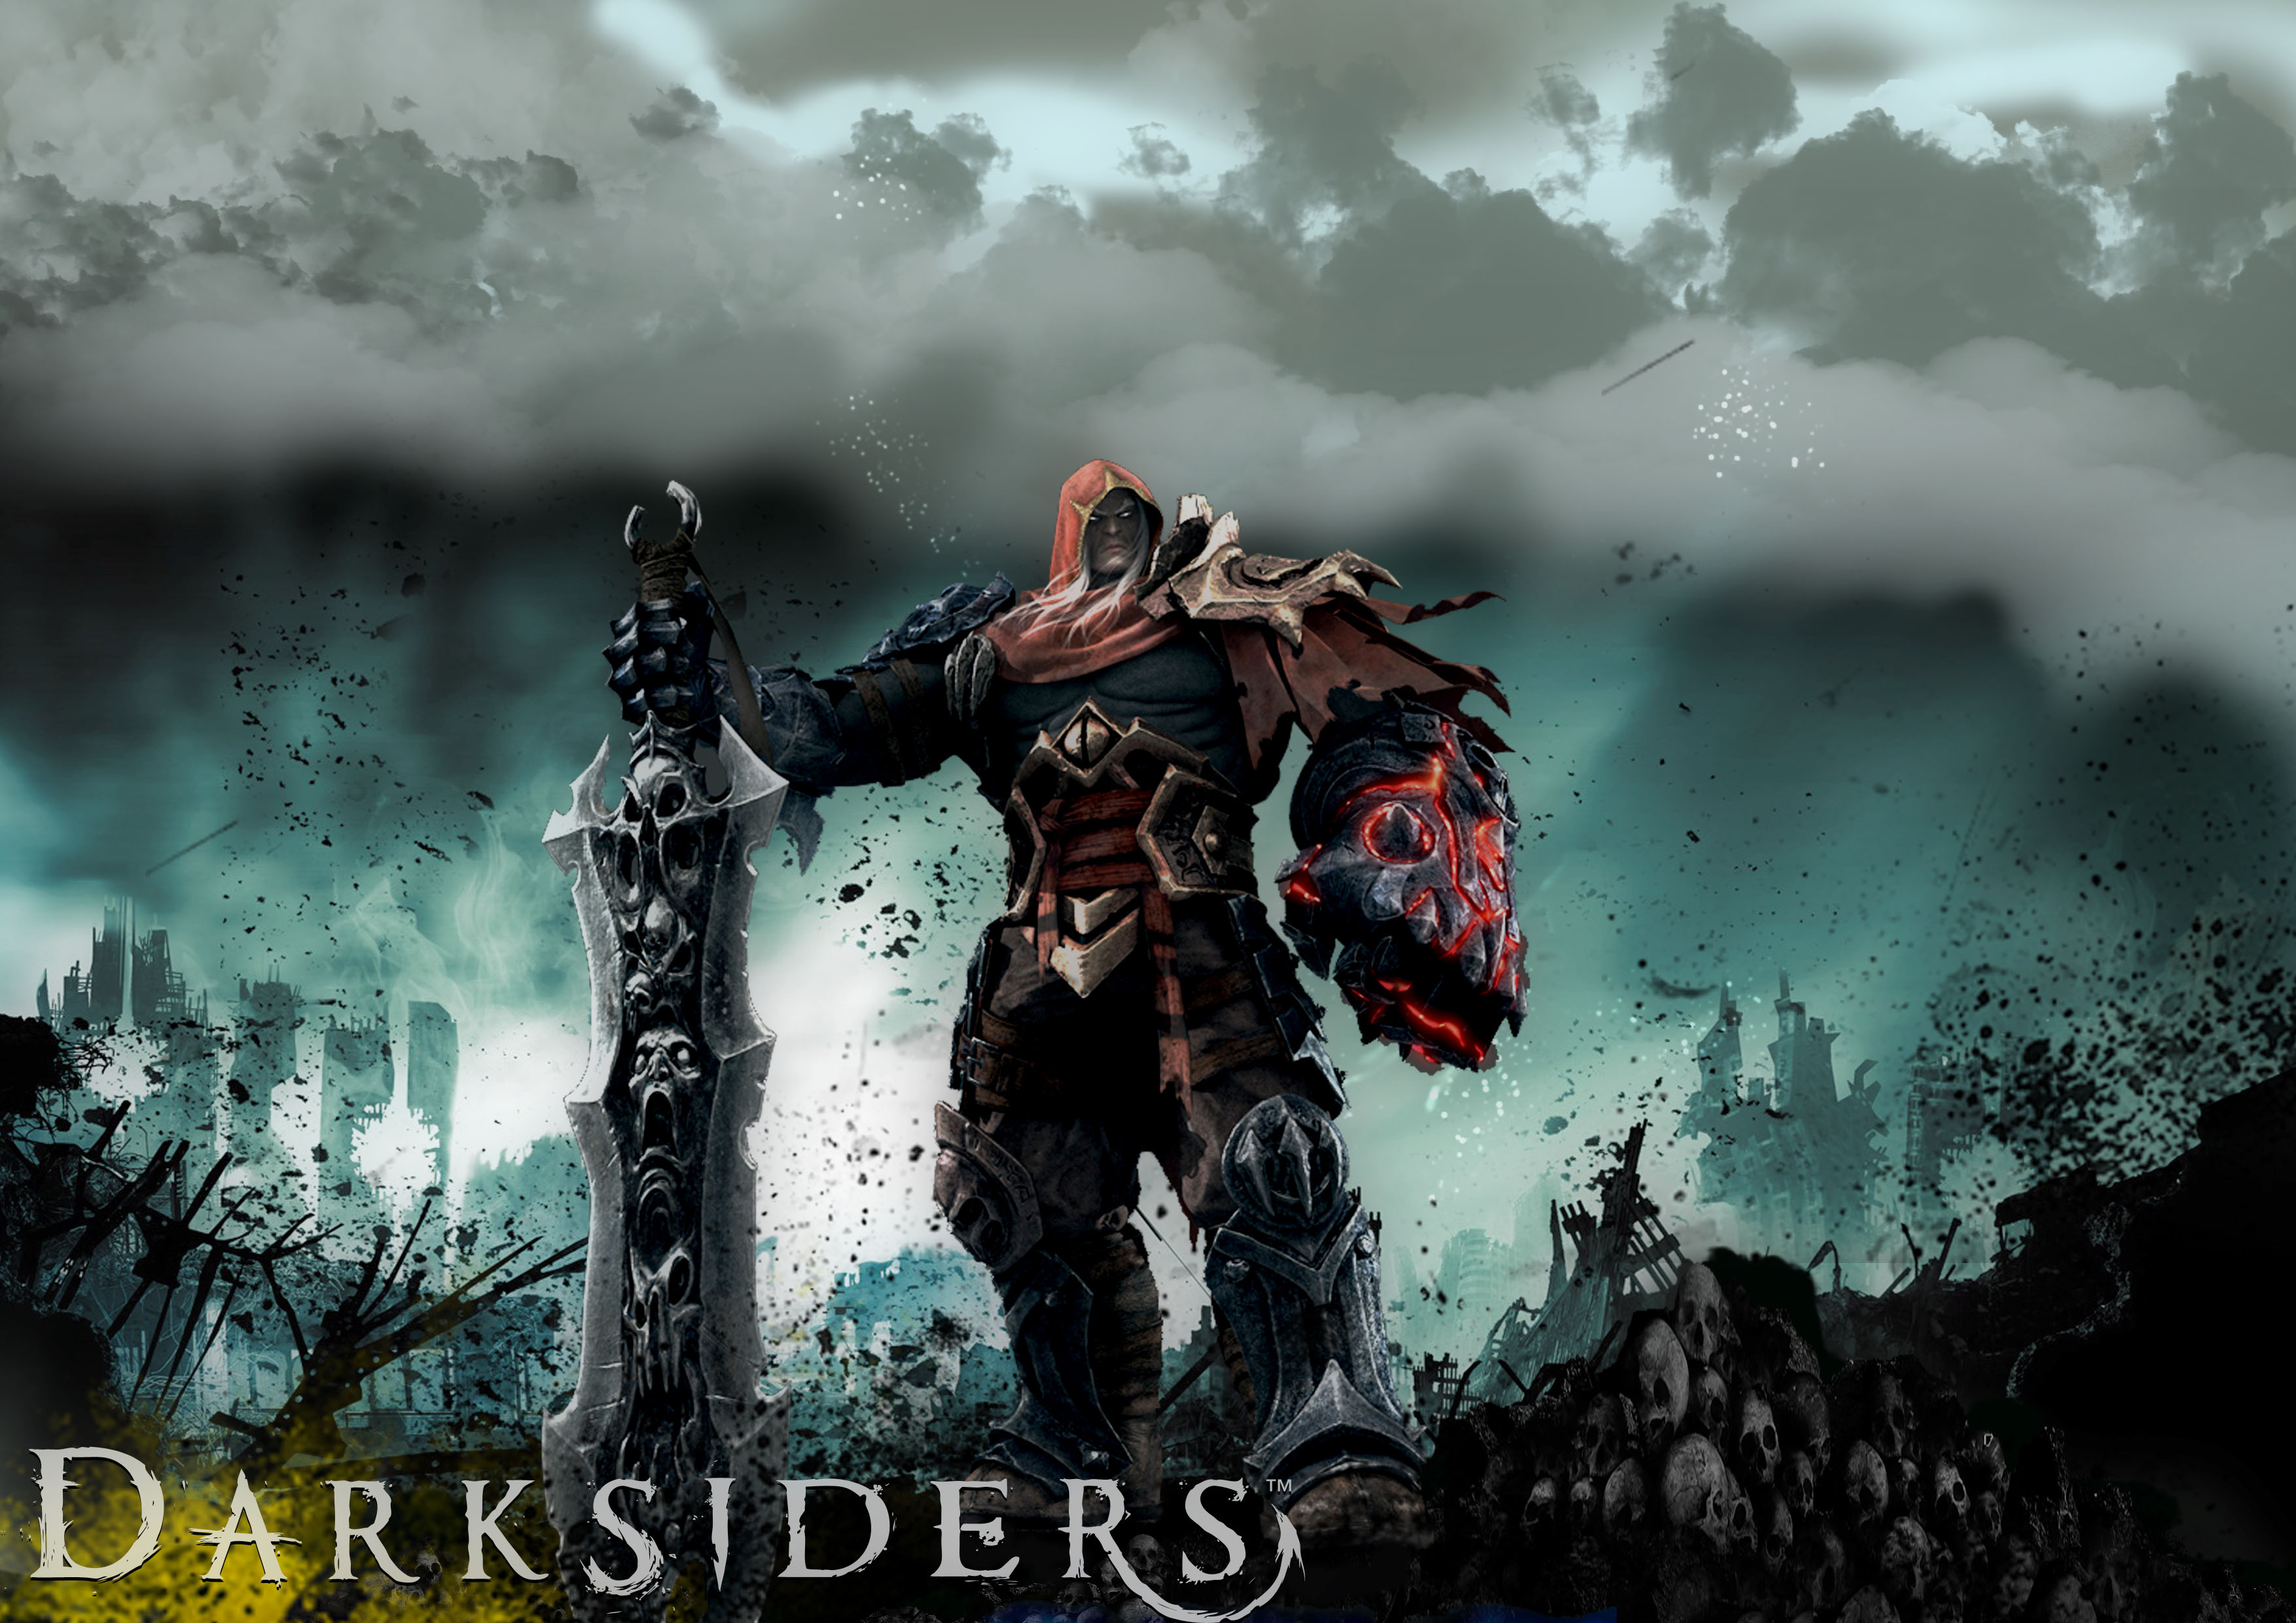 Darksiders Puter Wallpaper Desktop Background